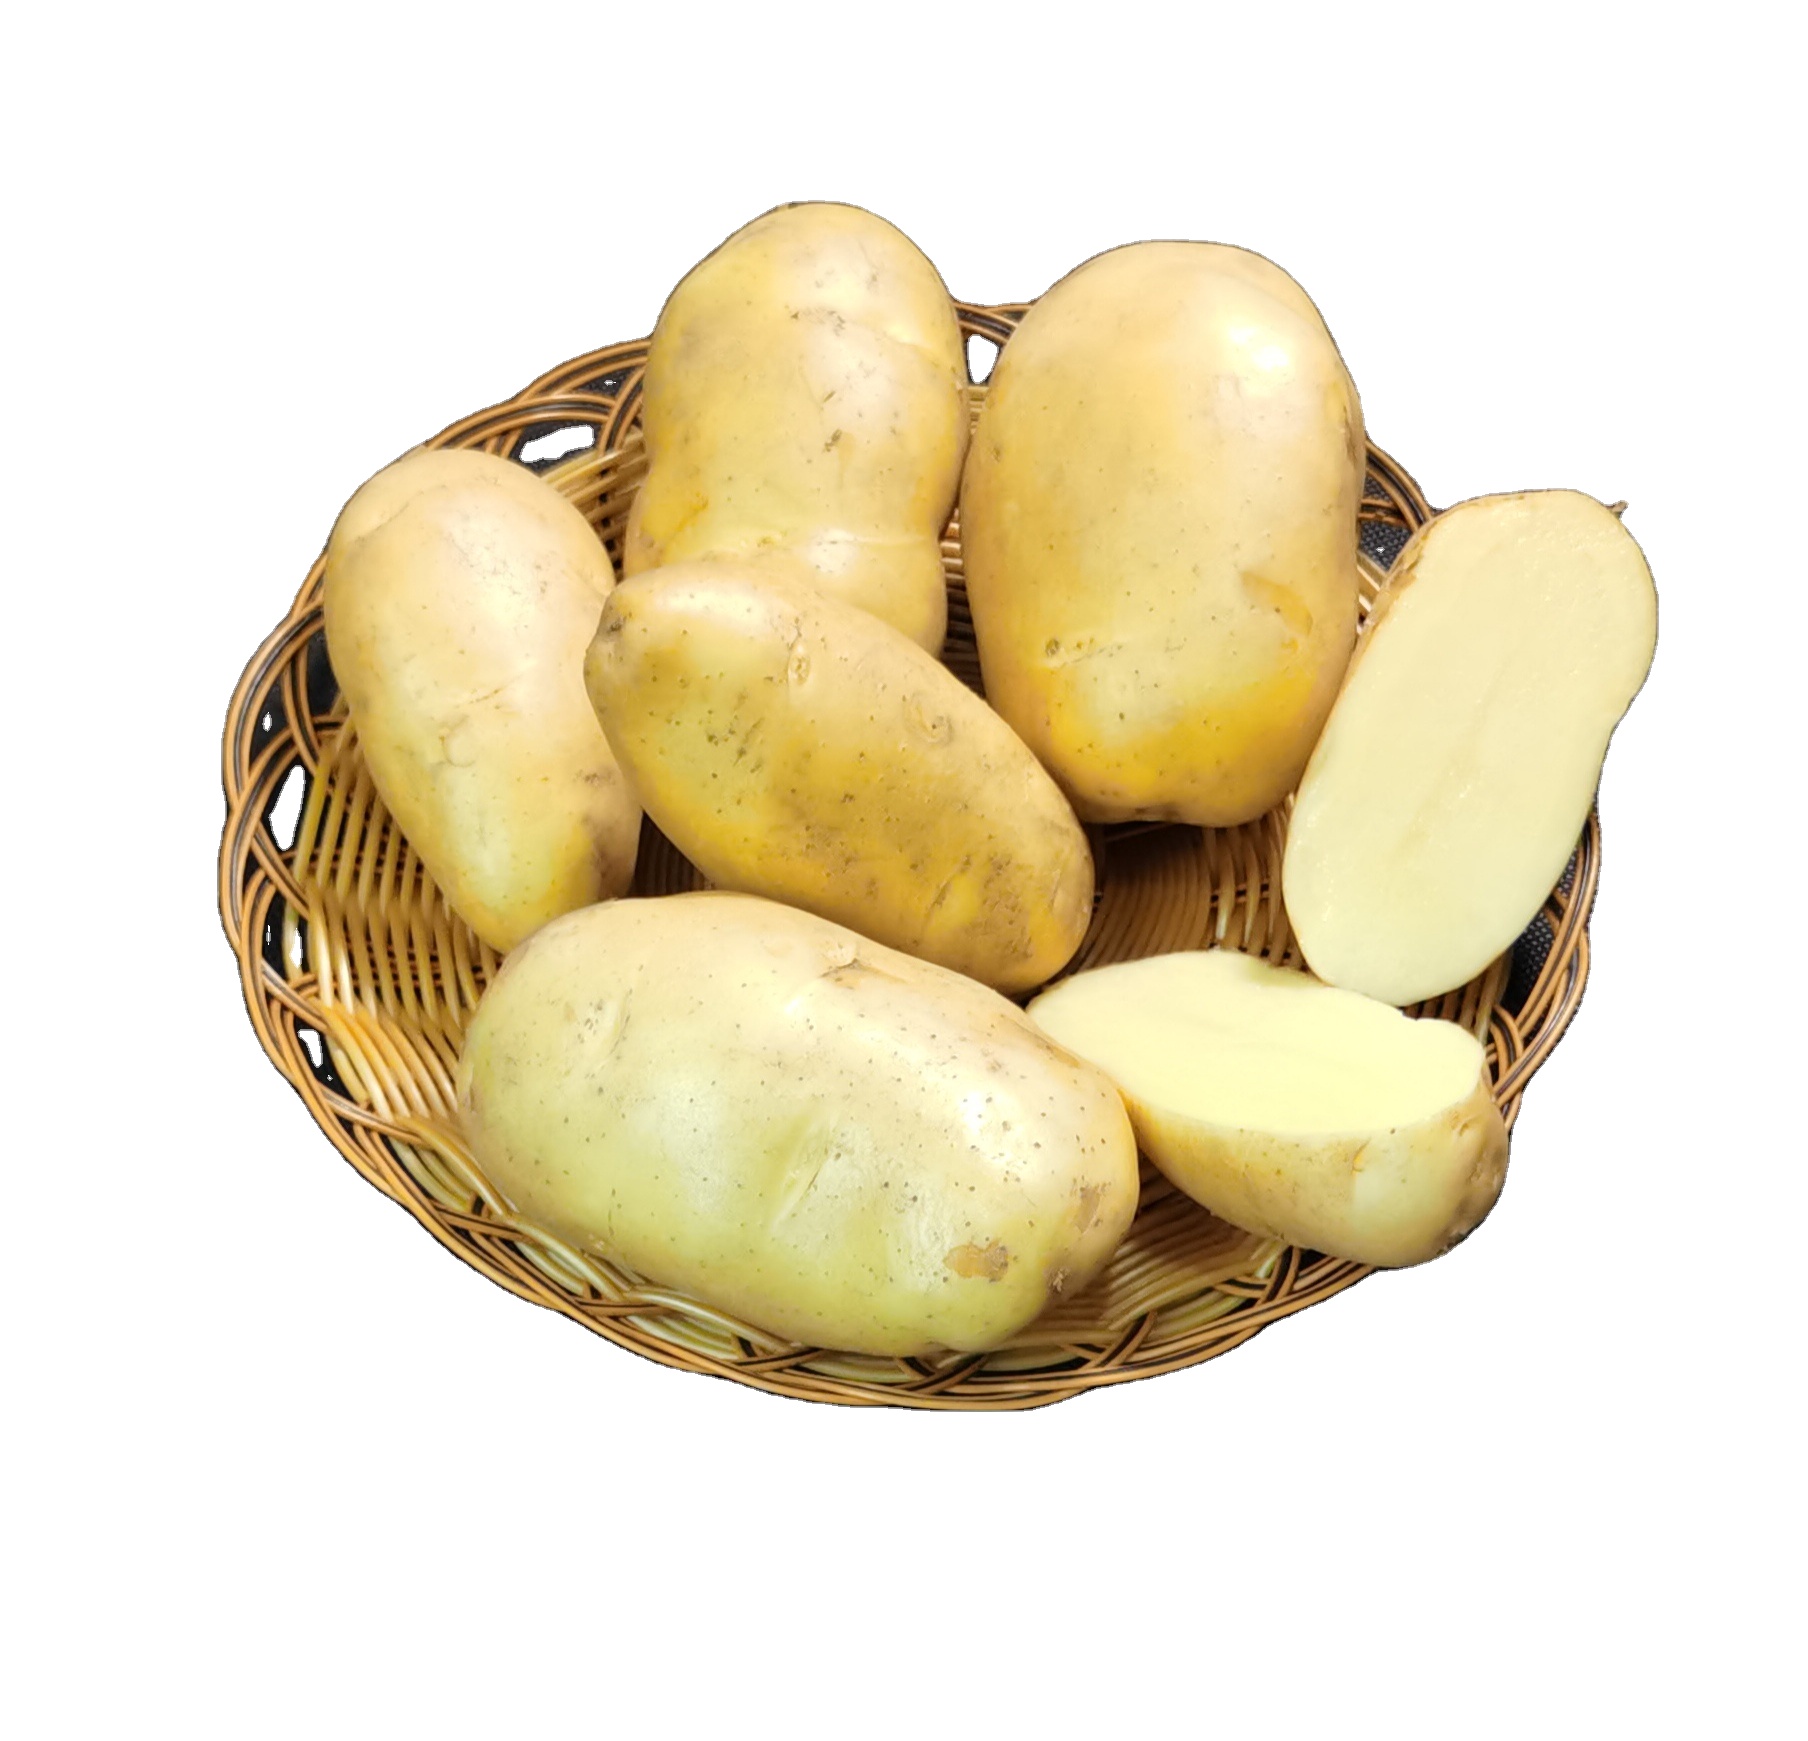 kentang segar pakistan kentang segar perancis